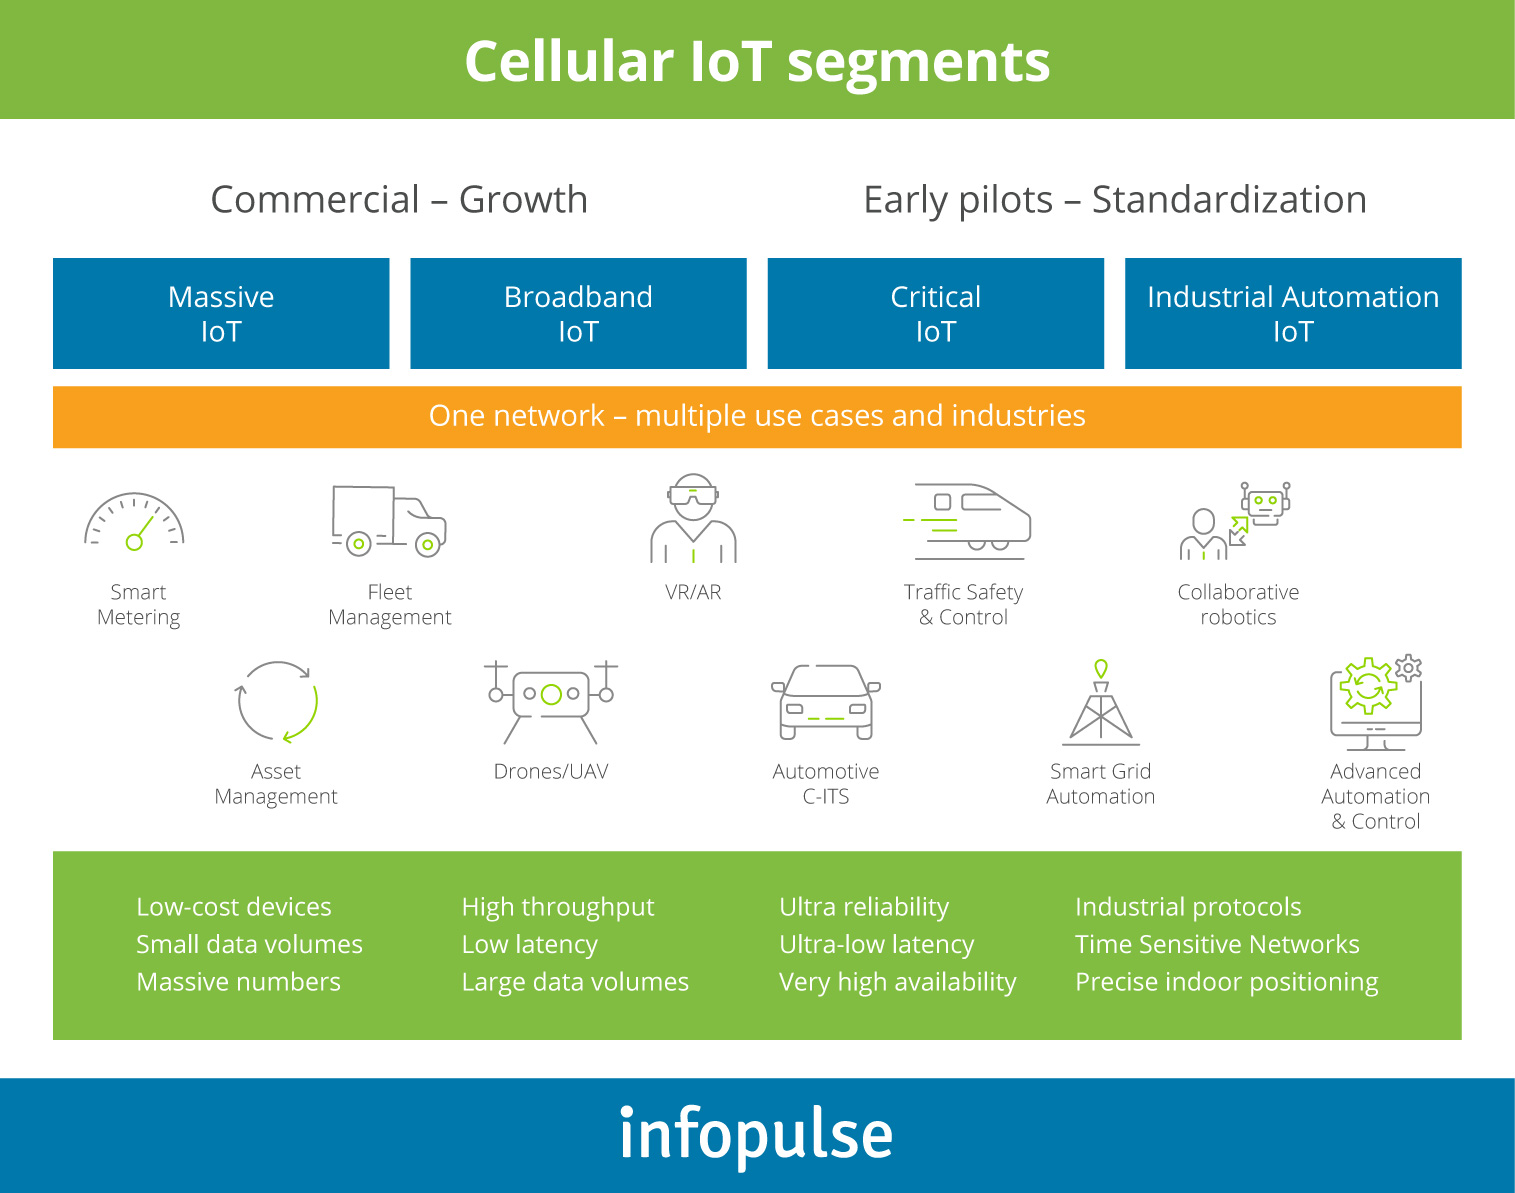 Cellular IoT segments leveraging 5G capabilities - 1